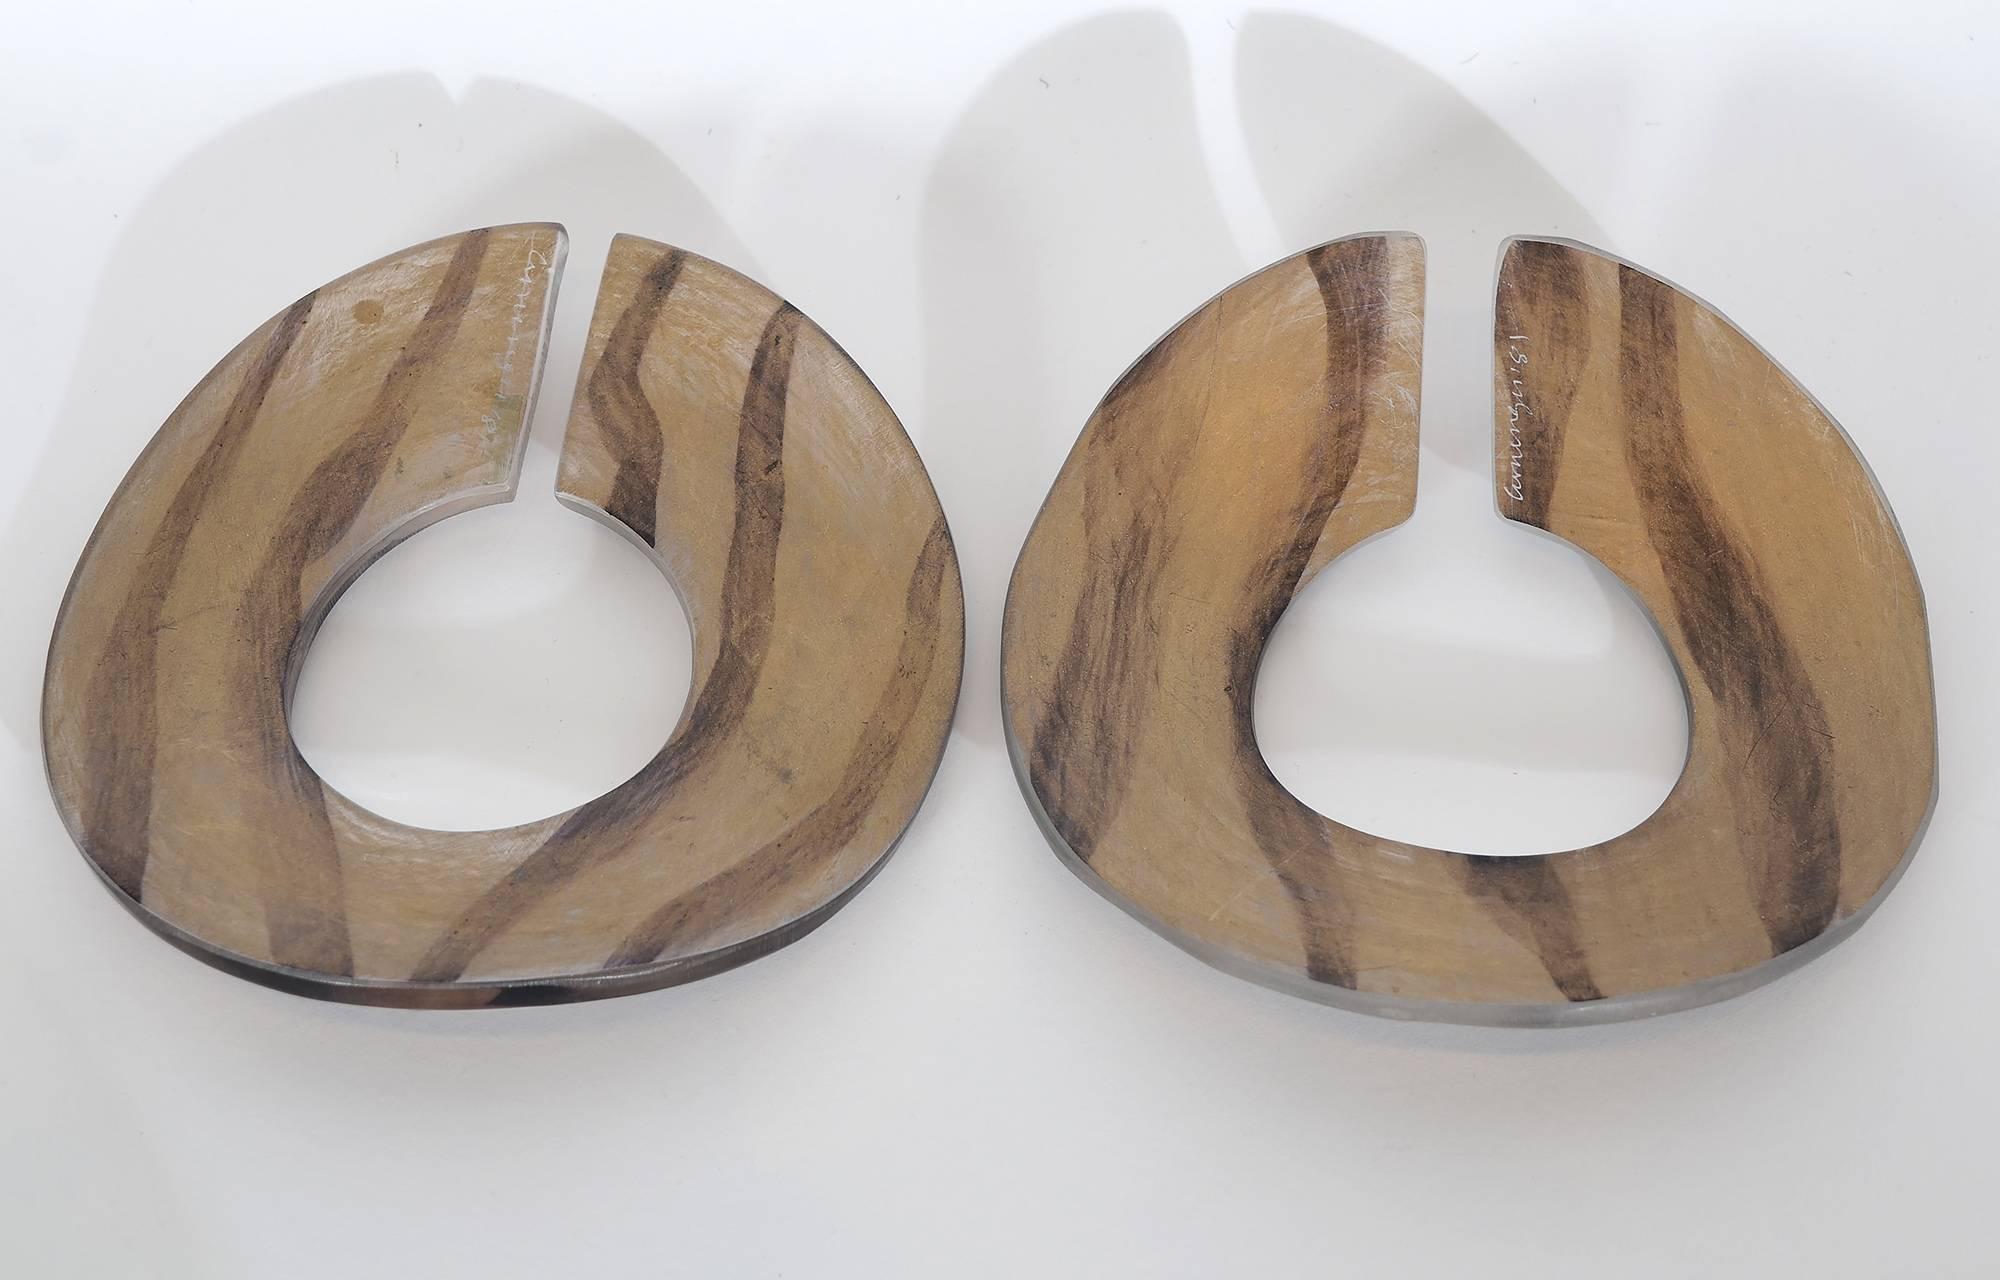 Dieses Paar wellenförmiger Armbänder aus Lucit wurde zu Beginn der Karriere der bekannten amerikanischen Schmuckdesignerin Angela Cummings angefertigt. Der eine ist auf beiden Seiten matt, der andere ist auf einer Seite glänzend und auf der anderen